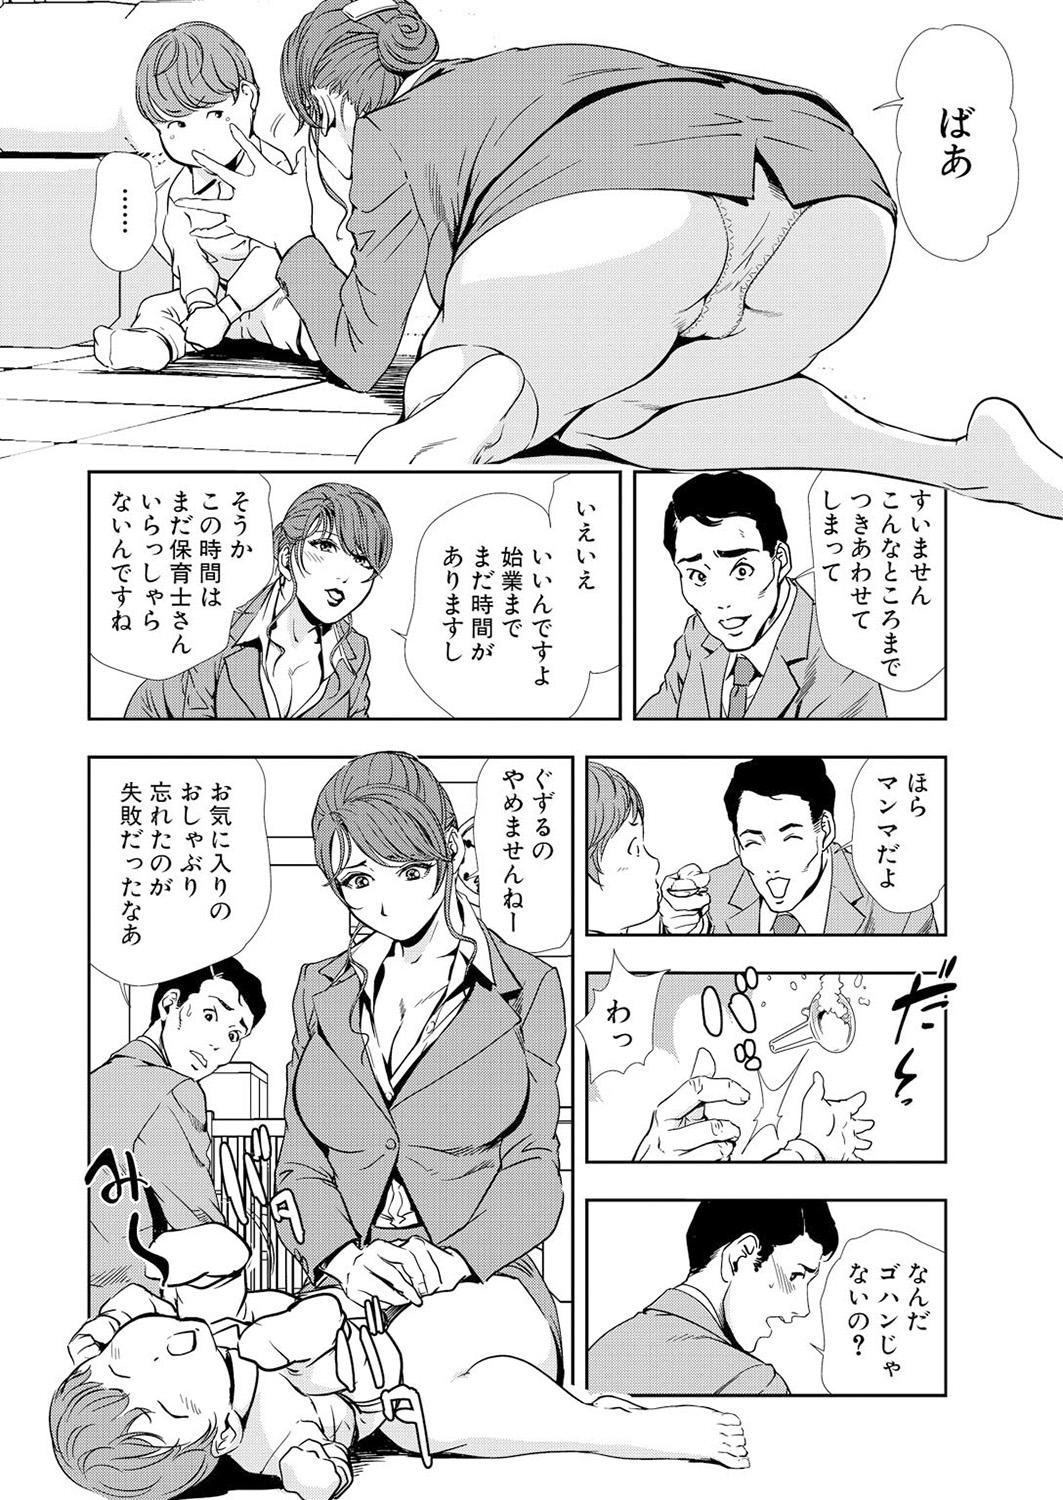 Slutty Nikuhisyo Yukiko 12 Zorra - Page 8